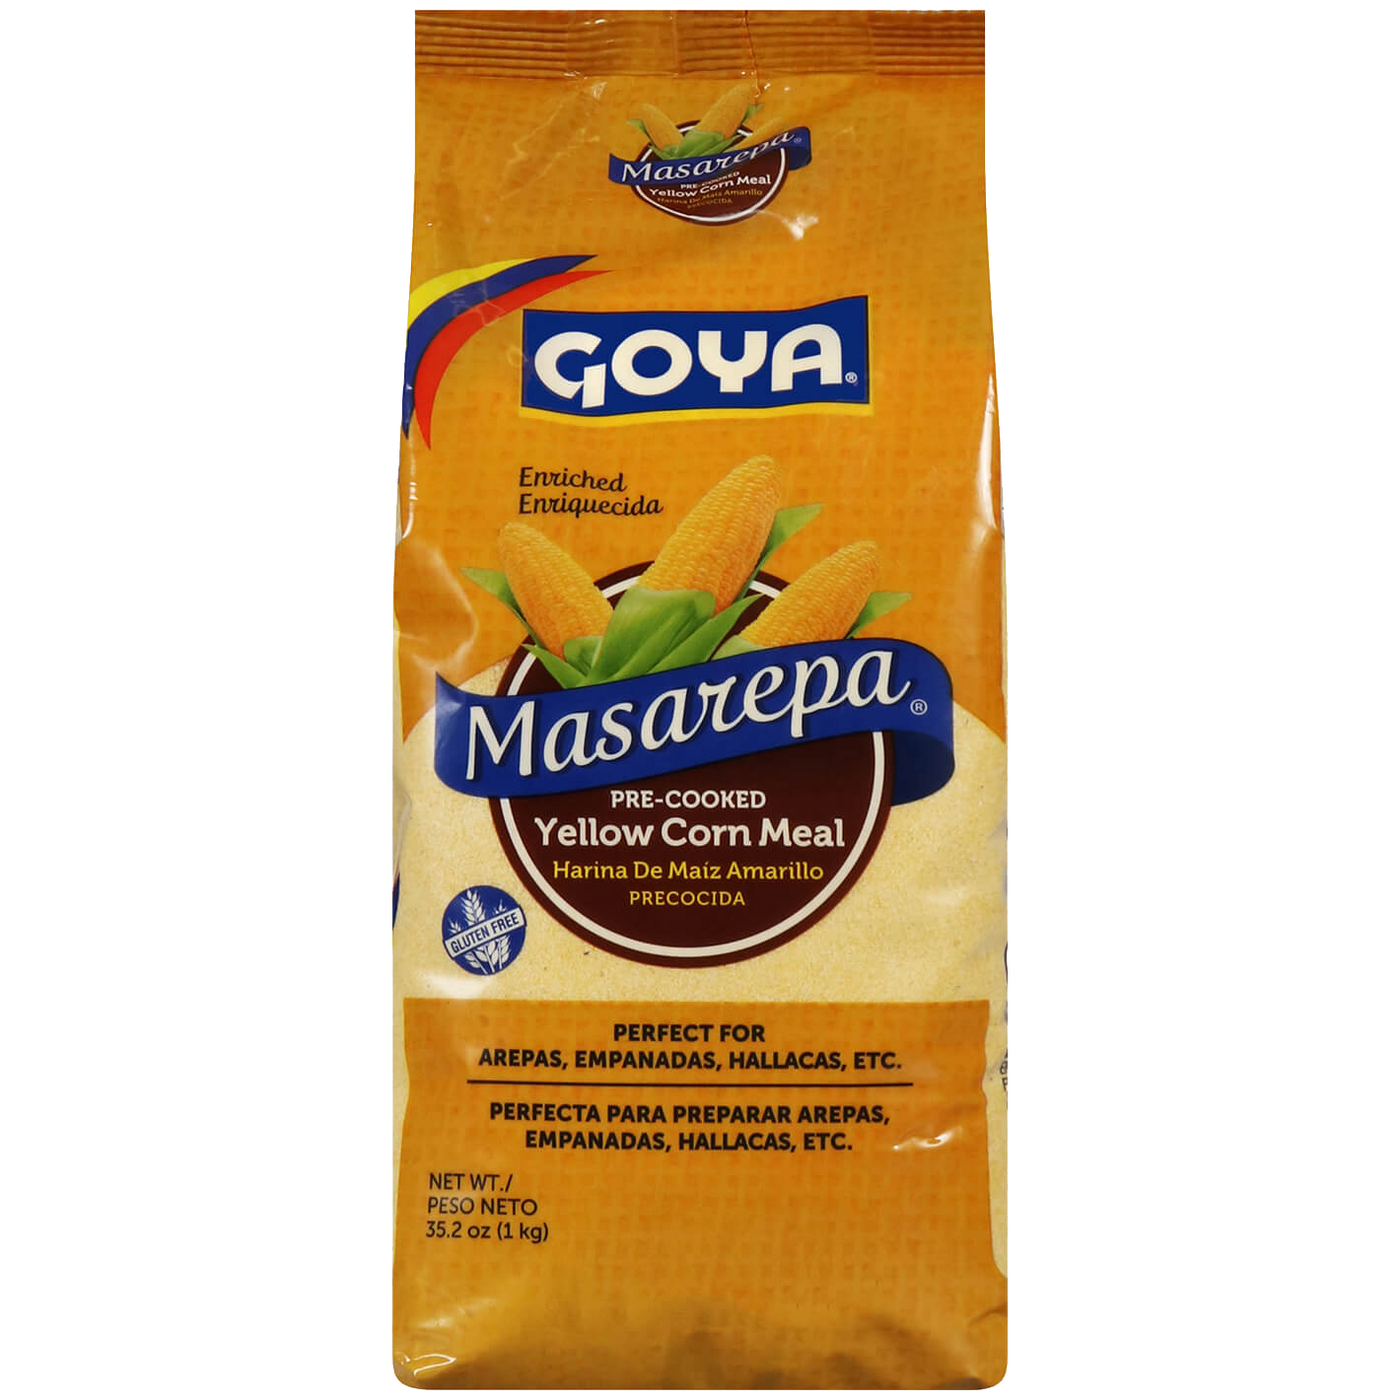 Goya Rice Flour 24oz | Harina de Arroz 681g